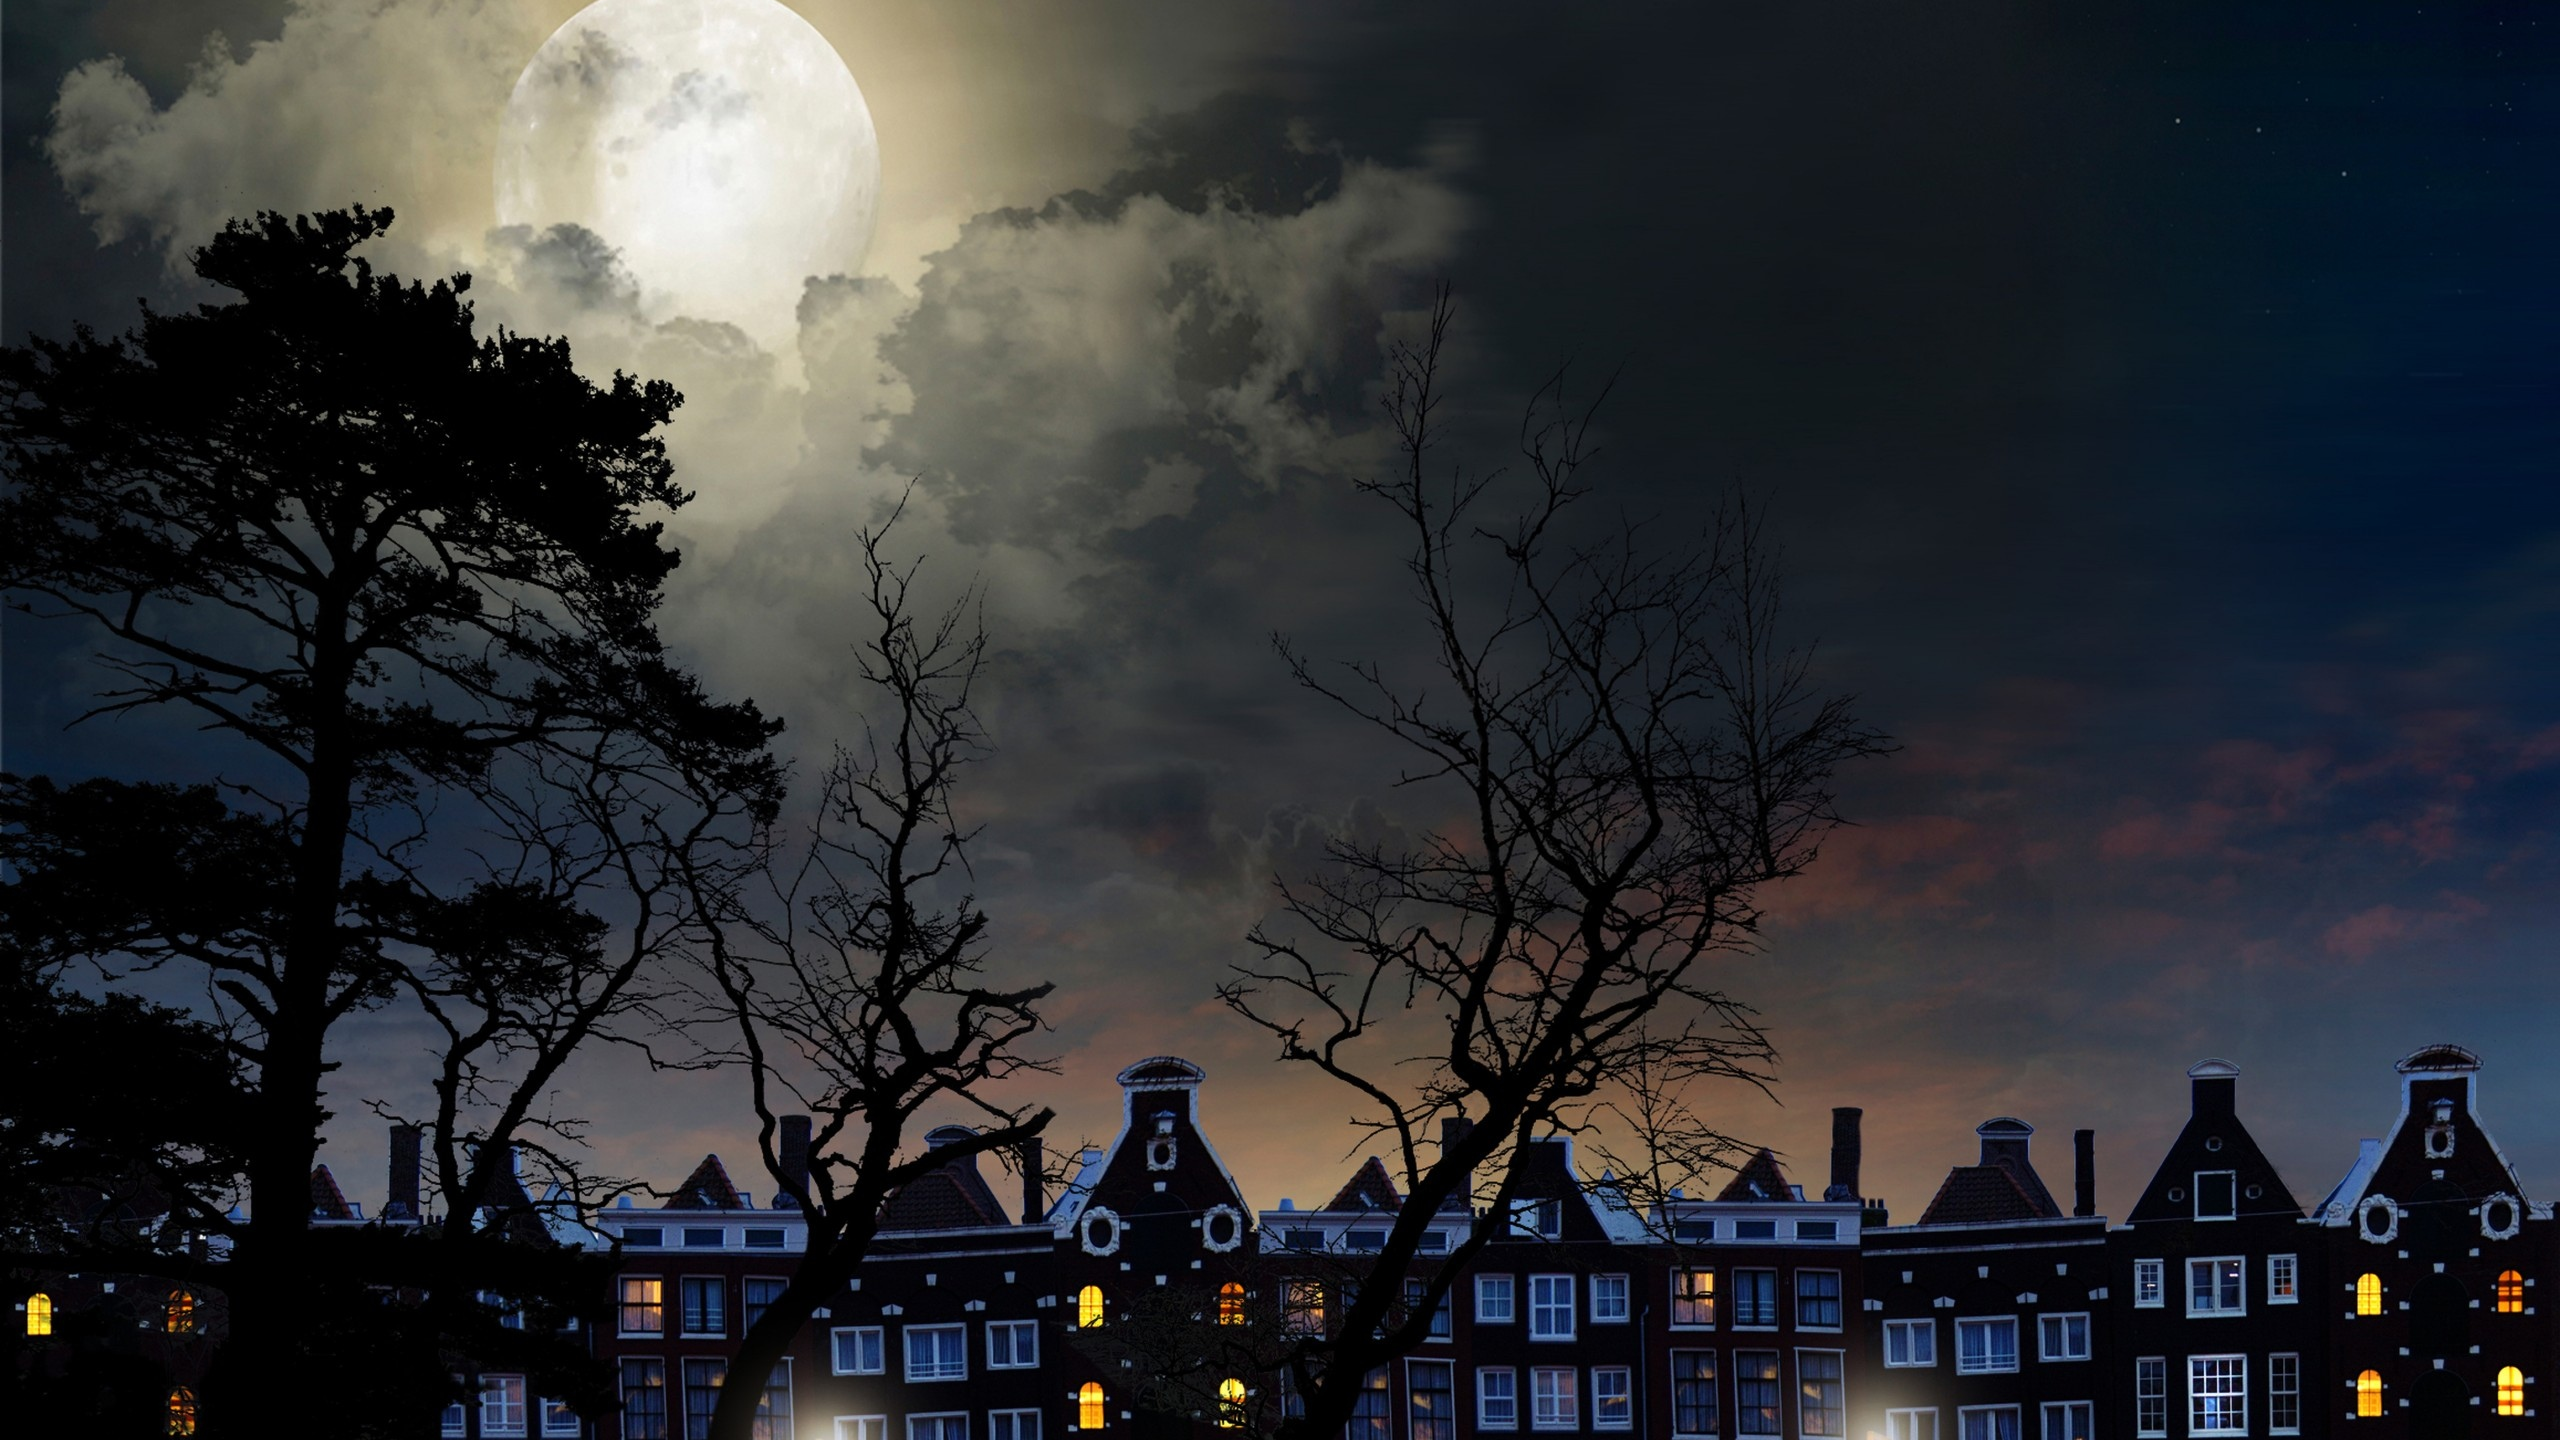 full, moon, magical night, city buildings, trees, sky, clouds, landscape, полный, луна, волшебная ночь, городские здания, деревья, небо, облака, пейзаж